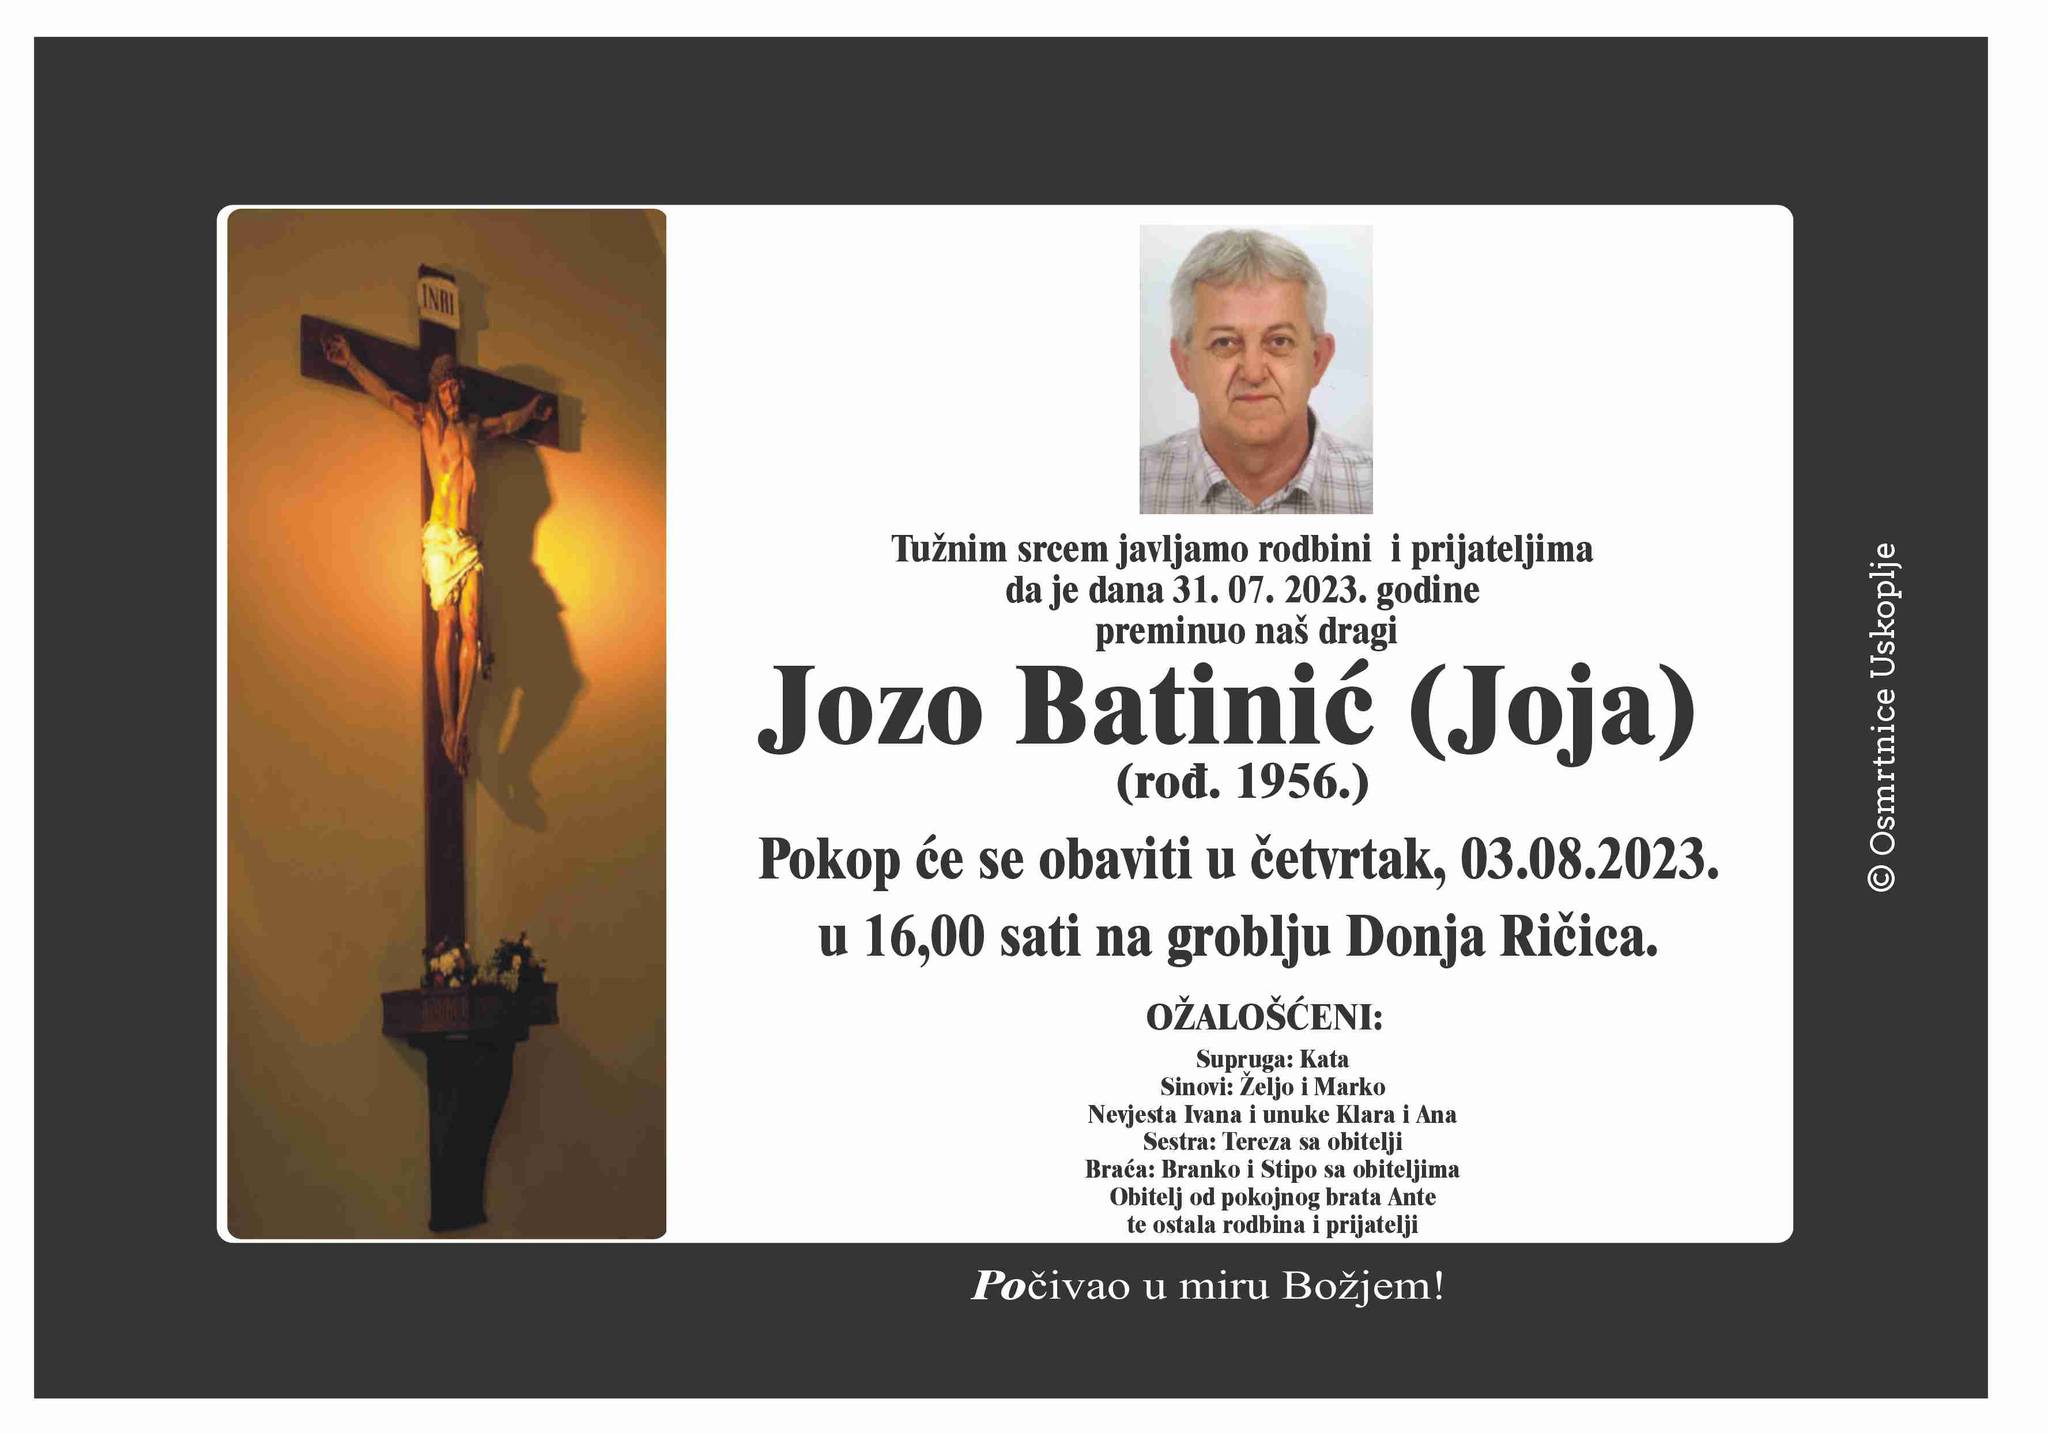 Jozo Batinić